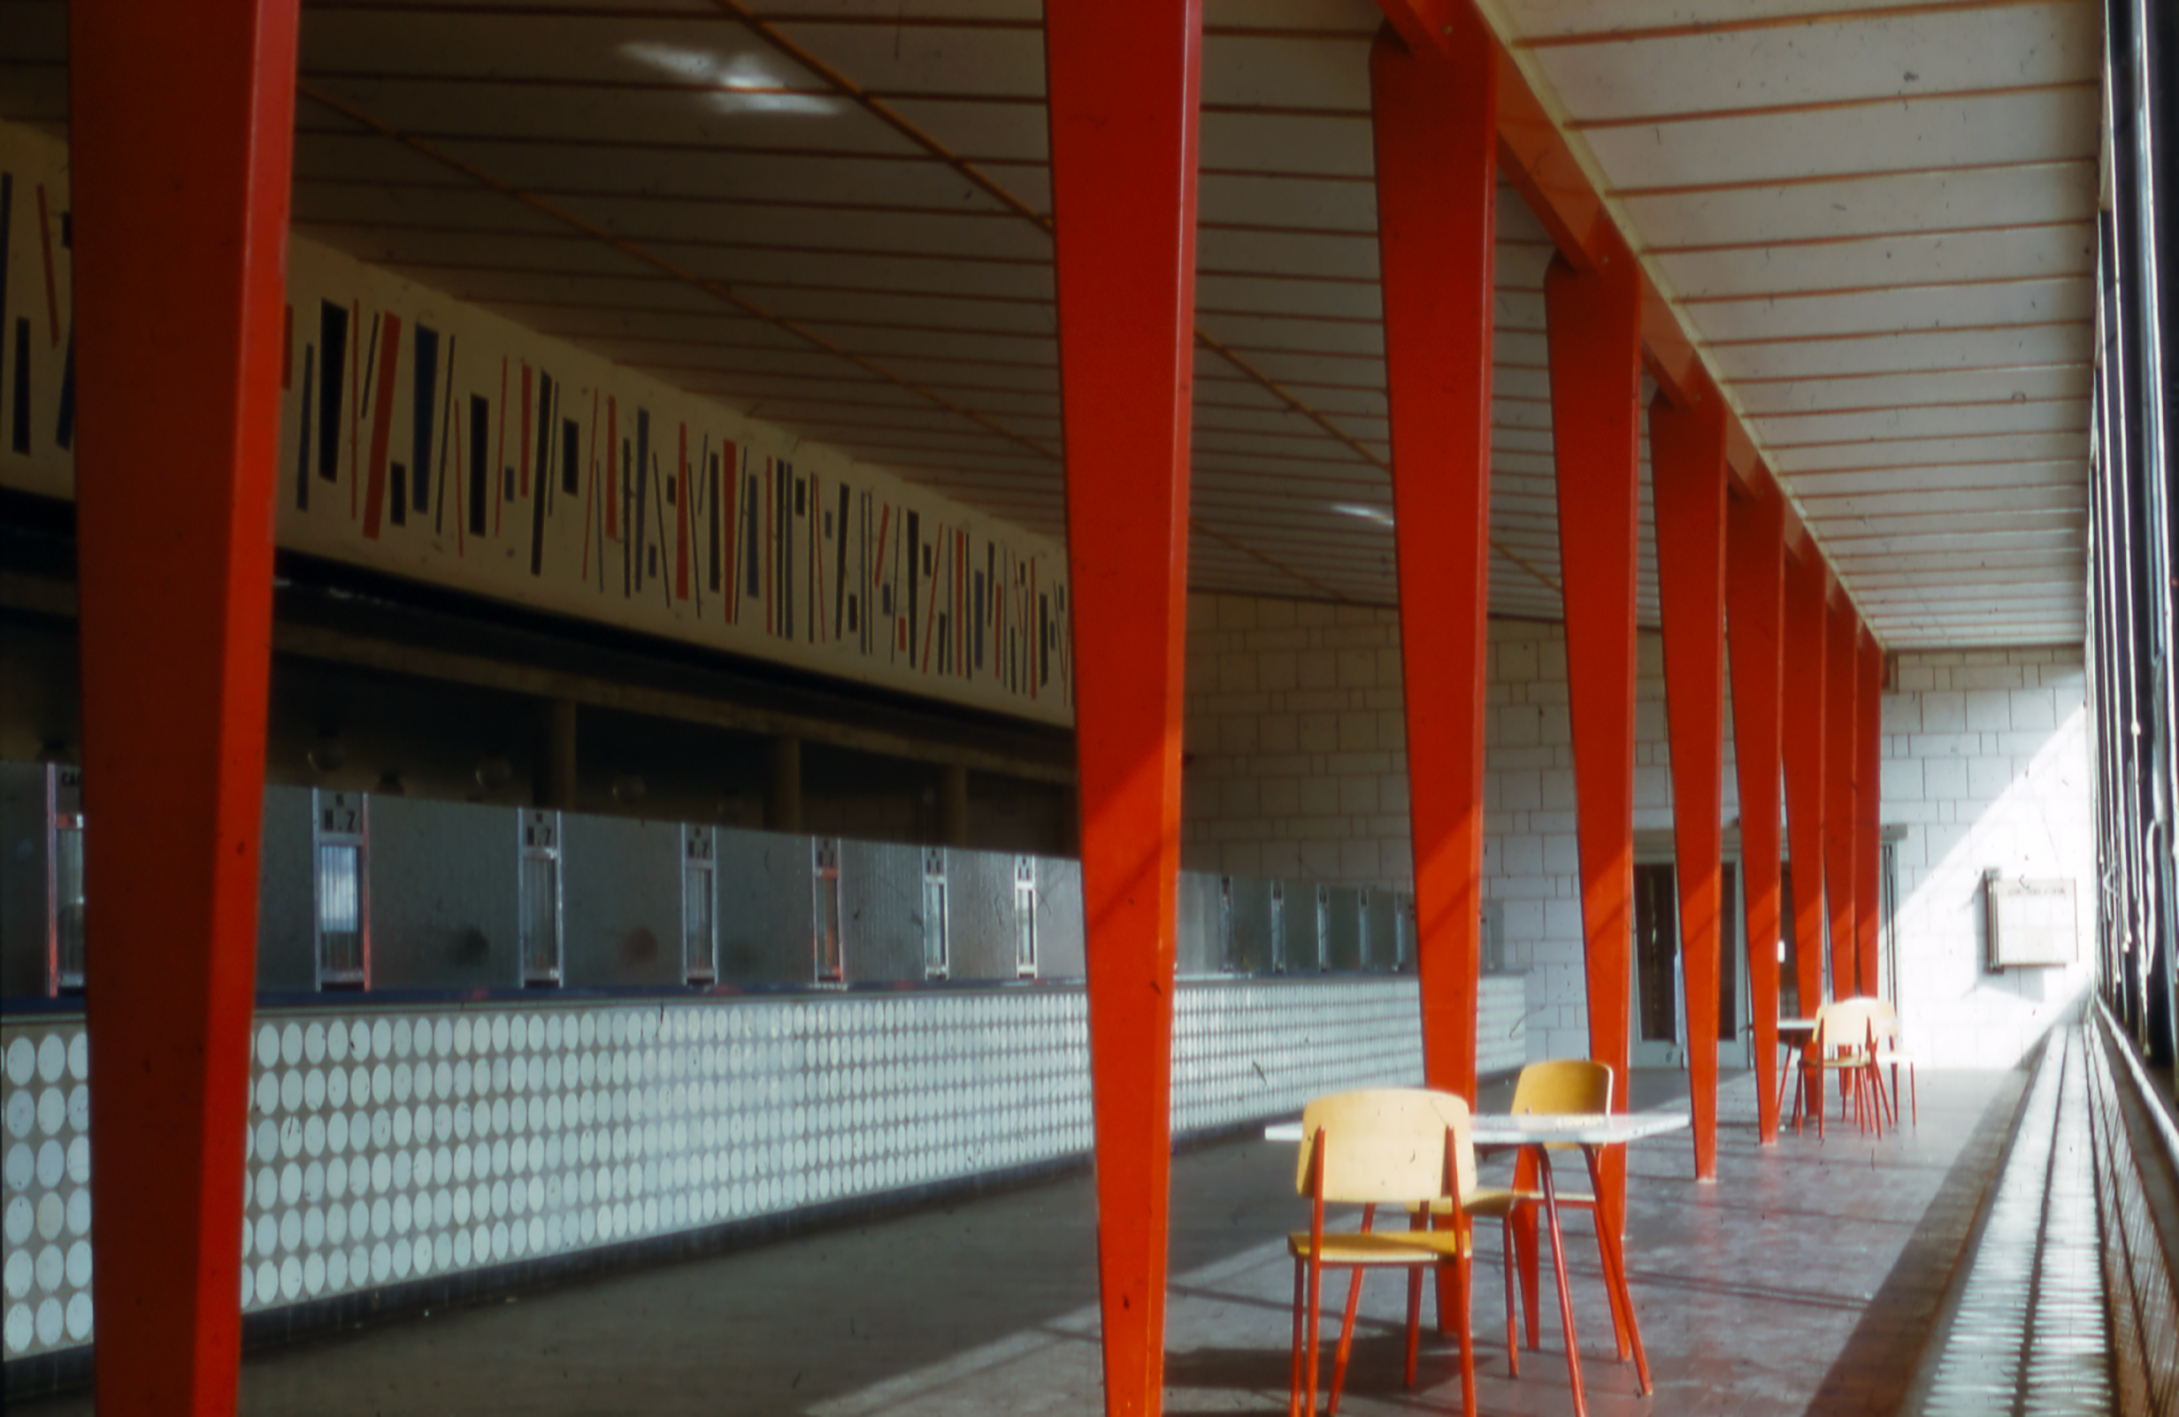 Immeuble de la Sécurité sociale, Le Mans (J. Le Couteur, arch., 1951). Hall des prestations aménagé avec des chaises Métropole n° 305 des Ateliers Jean Prouvé.